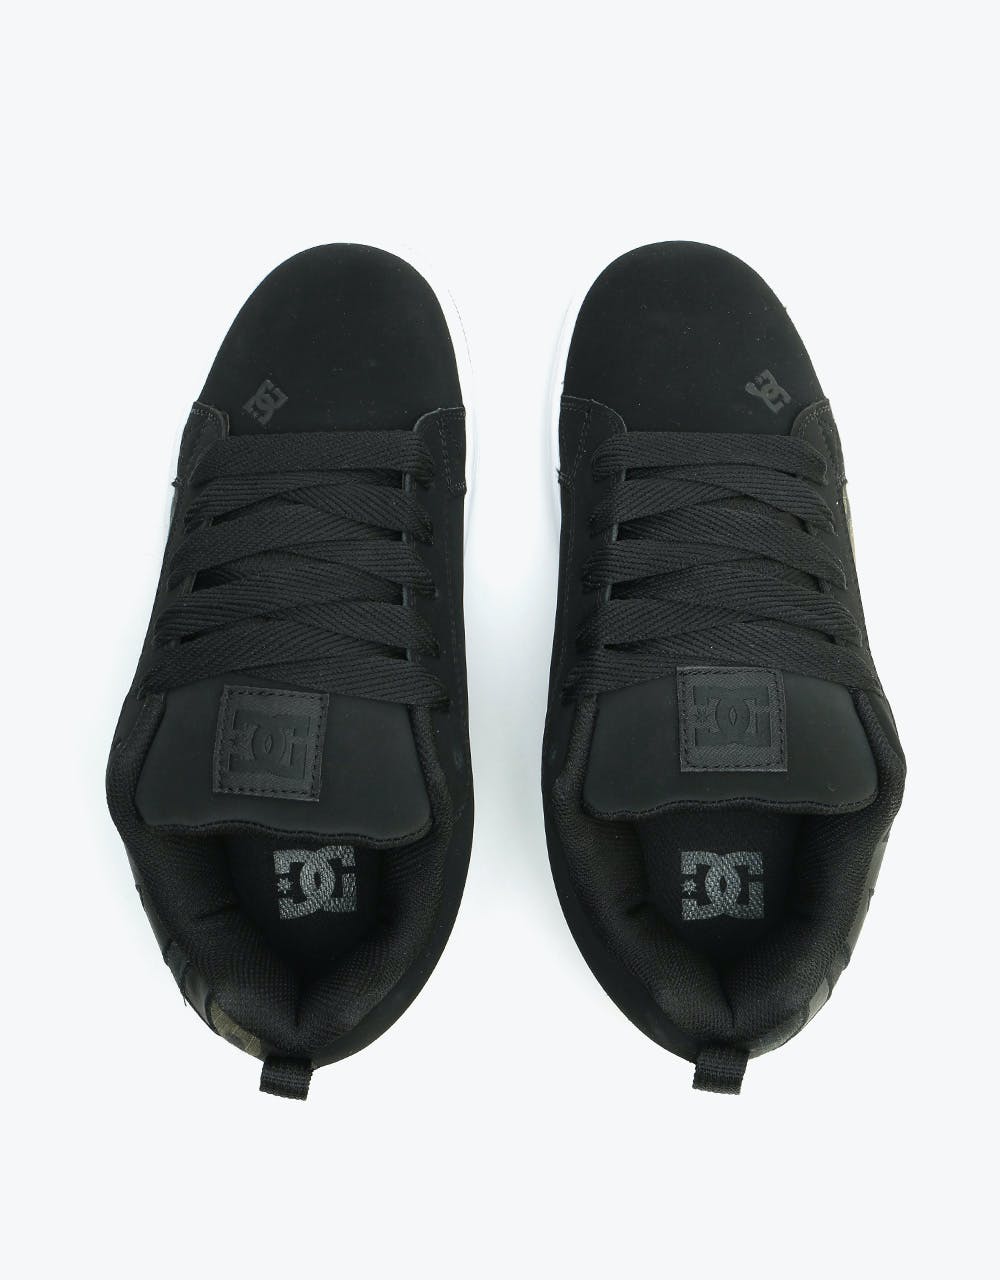 DC Court Graffik SE Skate Shoes - Grey/White/Grey